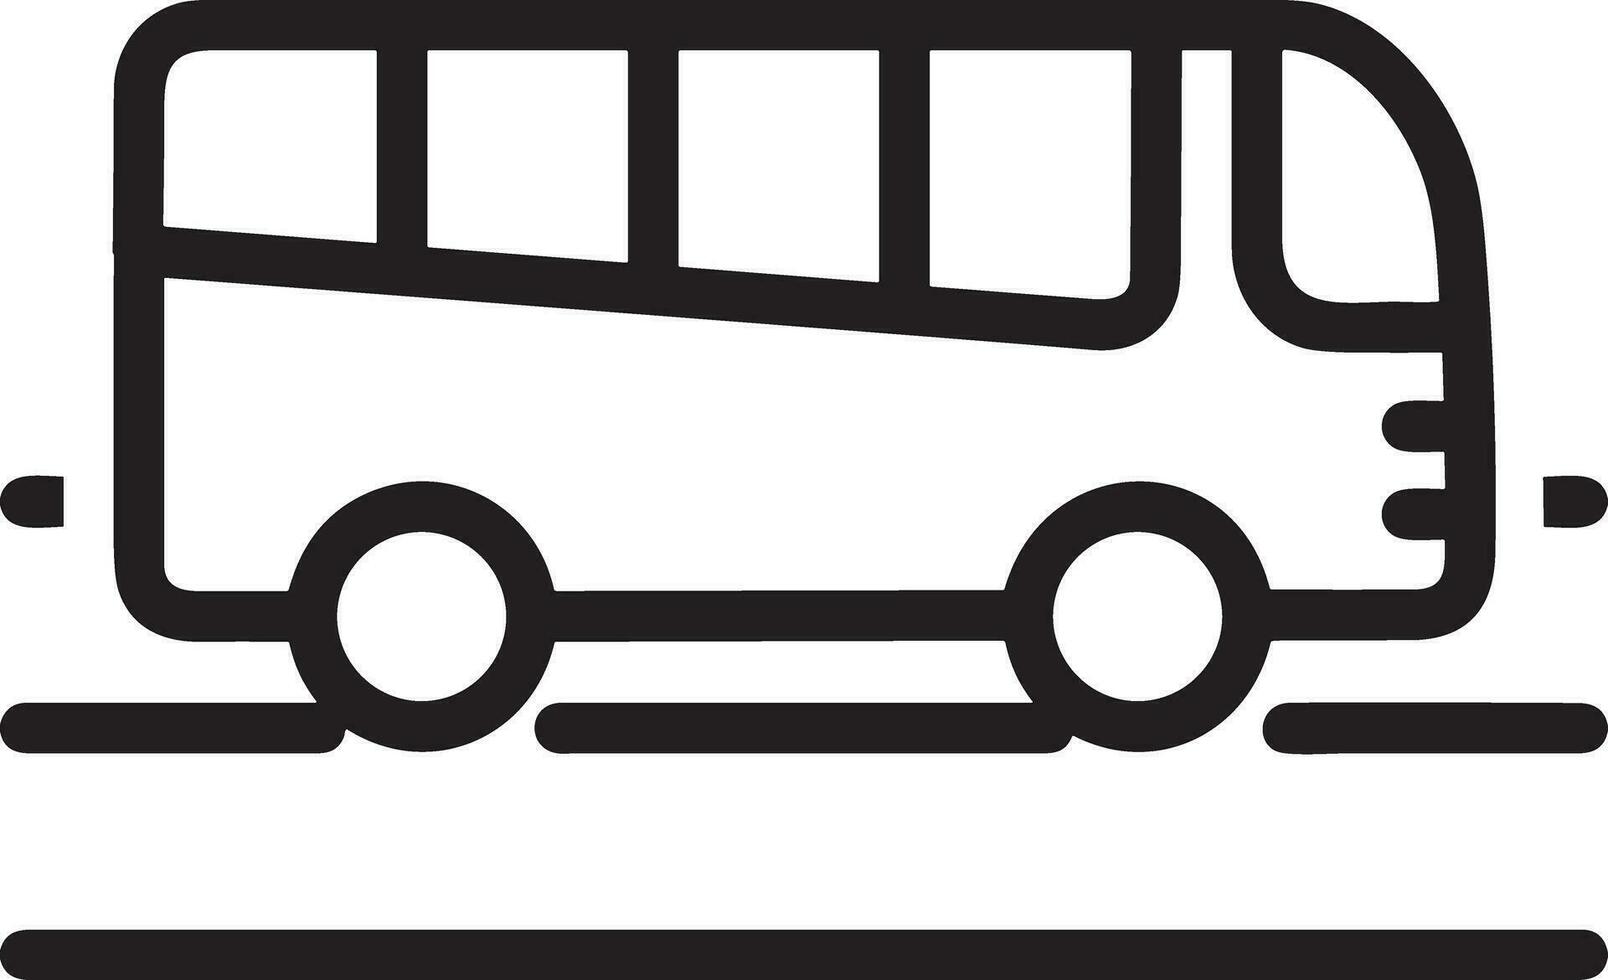 autobus mezzi di trasporto simbolo icona vettore Immagine. illustrazione di il silhouette autobus trasporto pubblico viaggio design Immagine